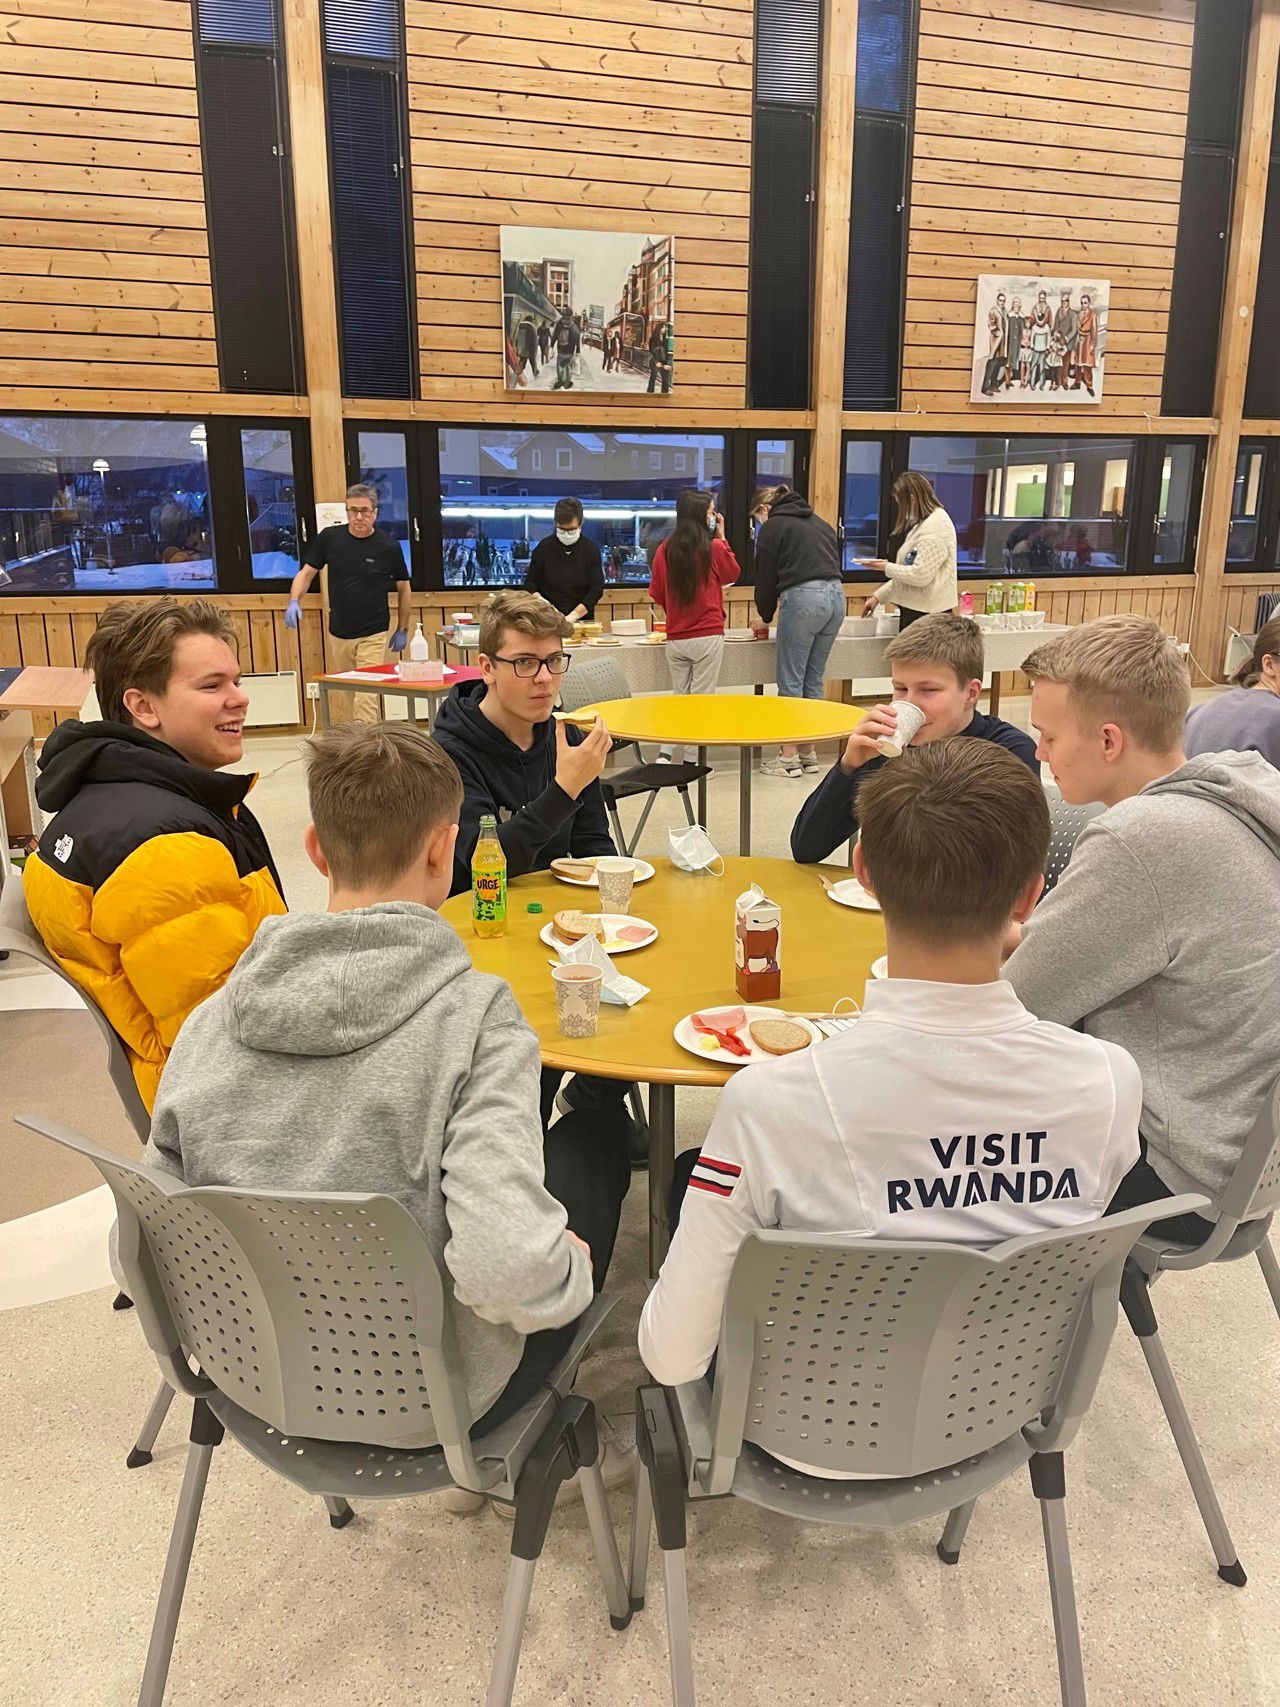 Seks elevar sit samla rundt eit bord i kantina og et skulefrokost. I bakgrunn kan ein sjå fleire elevar som forsyn seg med skjebver og pålegg.